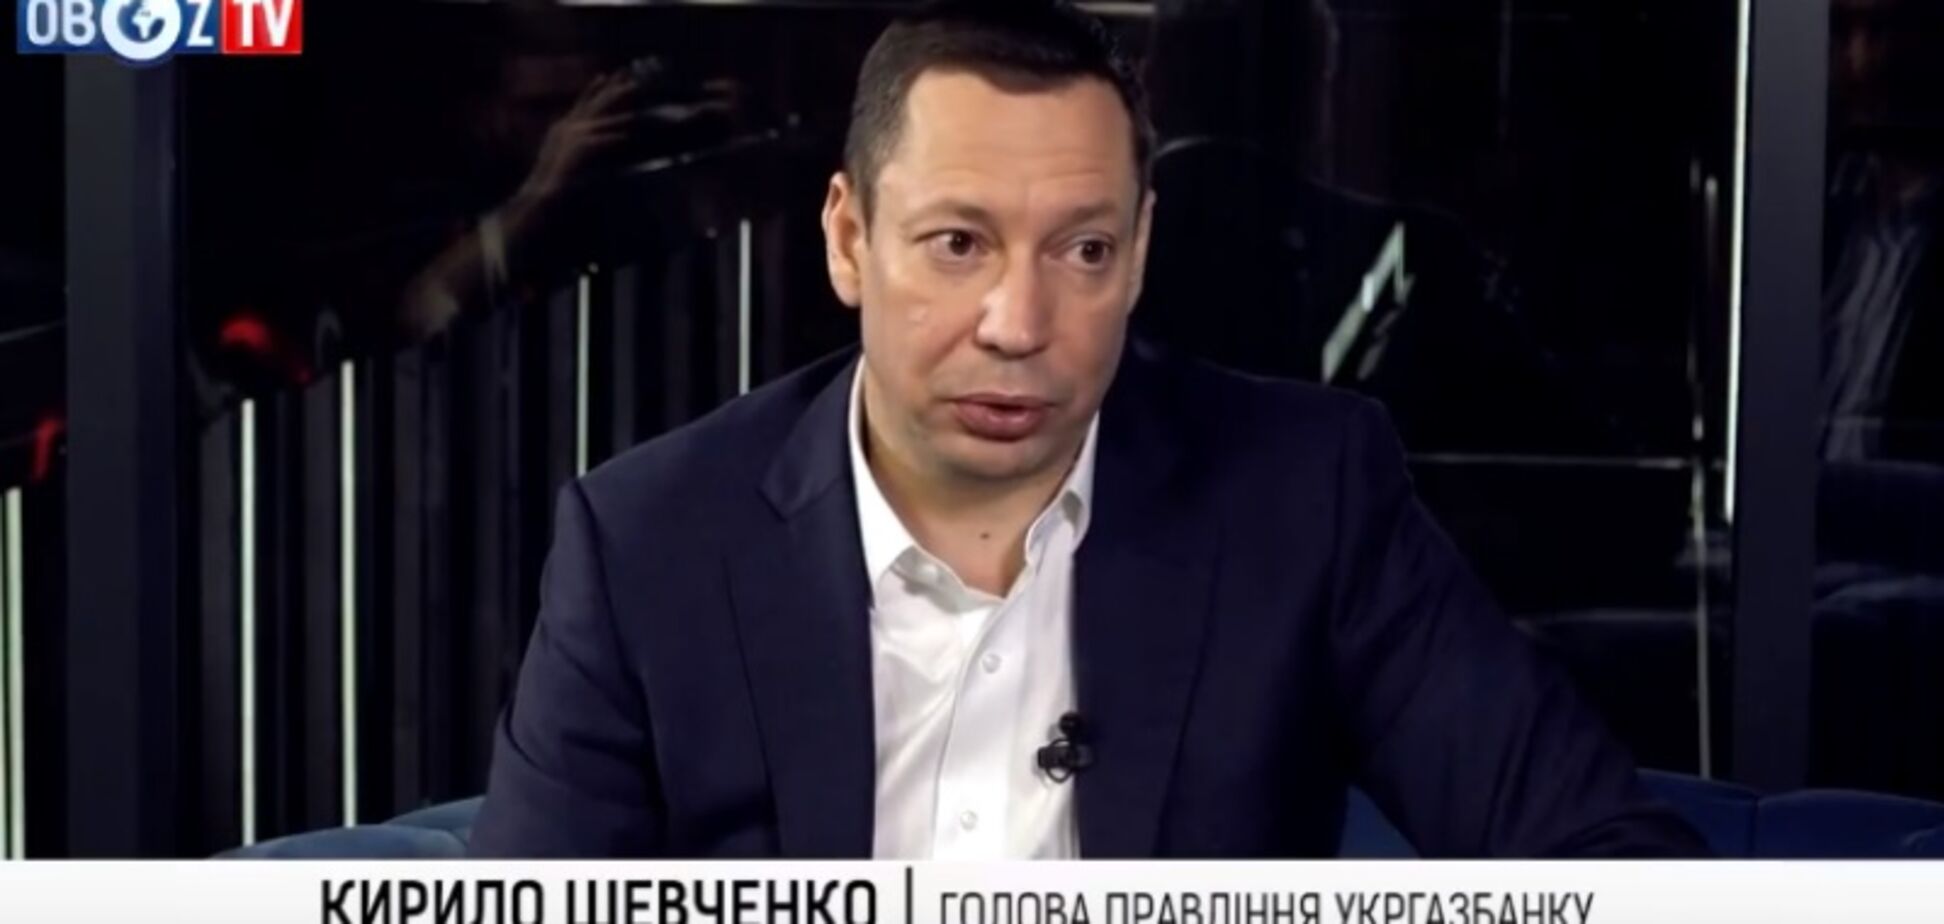 Кирилл Шевченко: я против того, чтобы Украина стала свалкой Европы